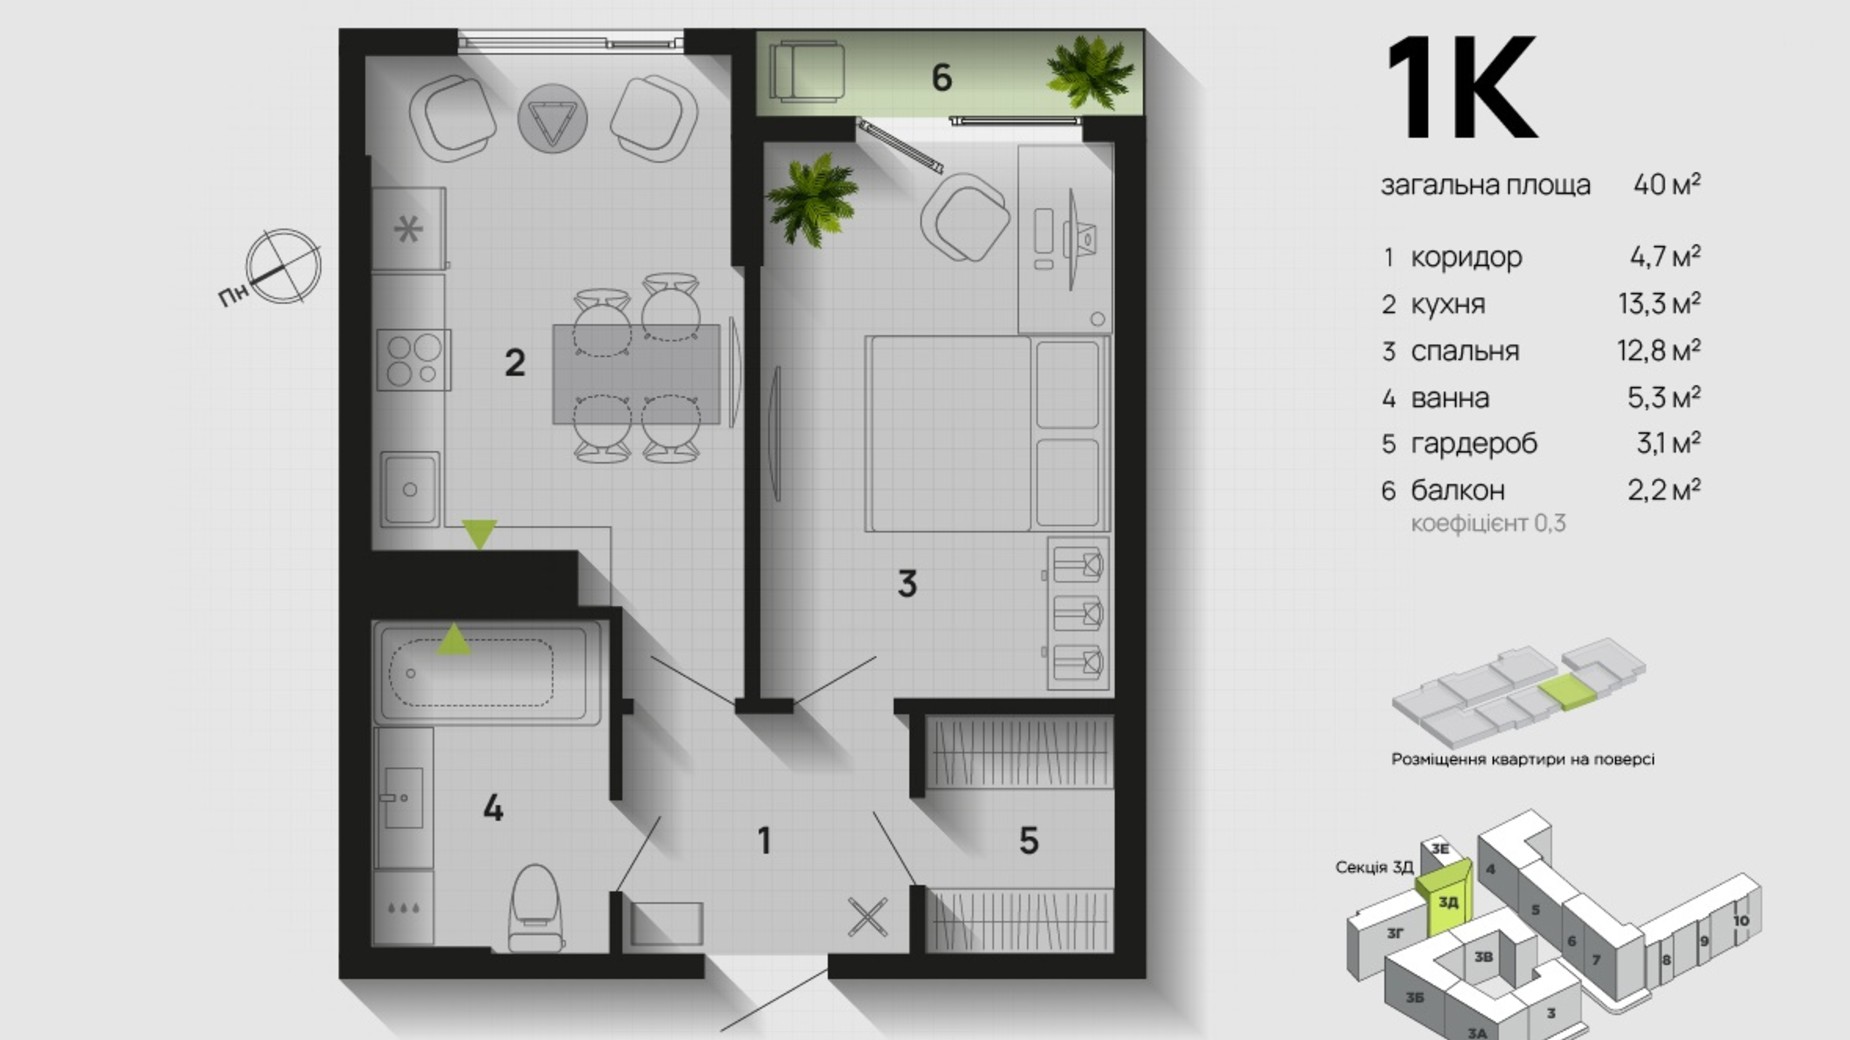 Планировка 1-комнатной квартиры в ЖК Парковая Аллея 40 м², фото 611342